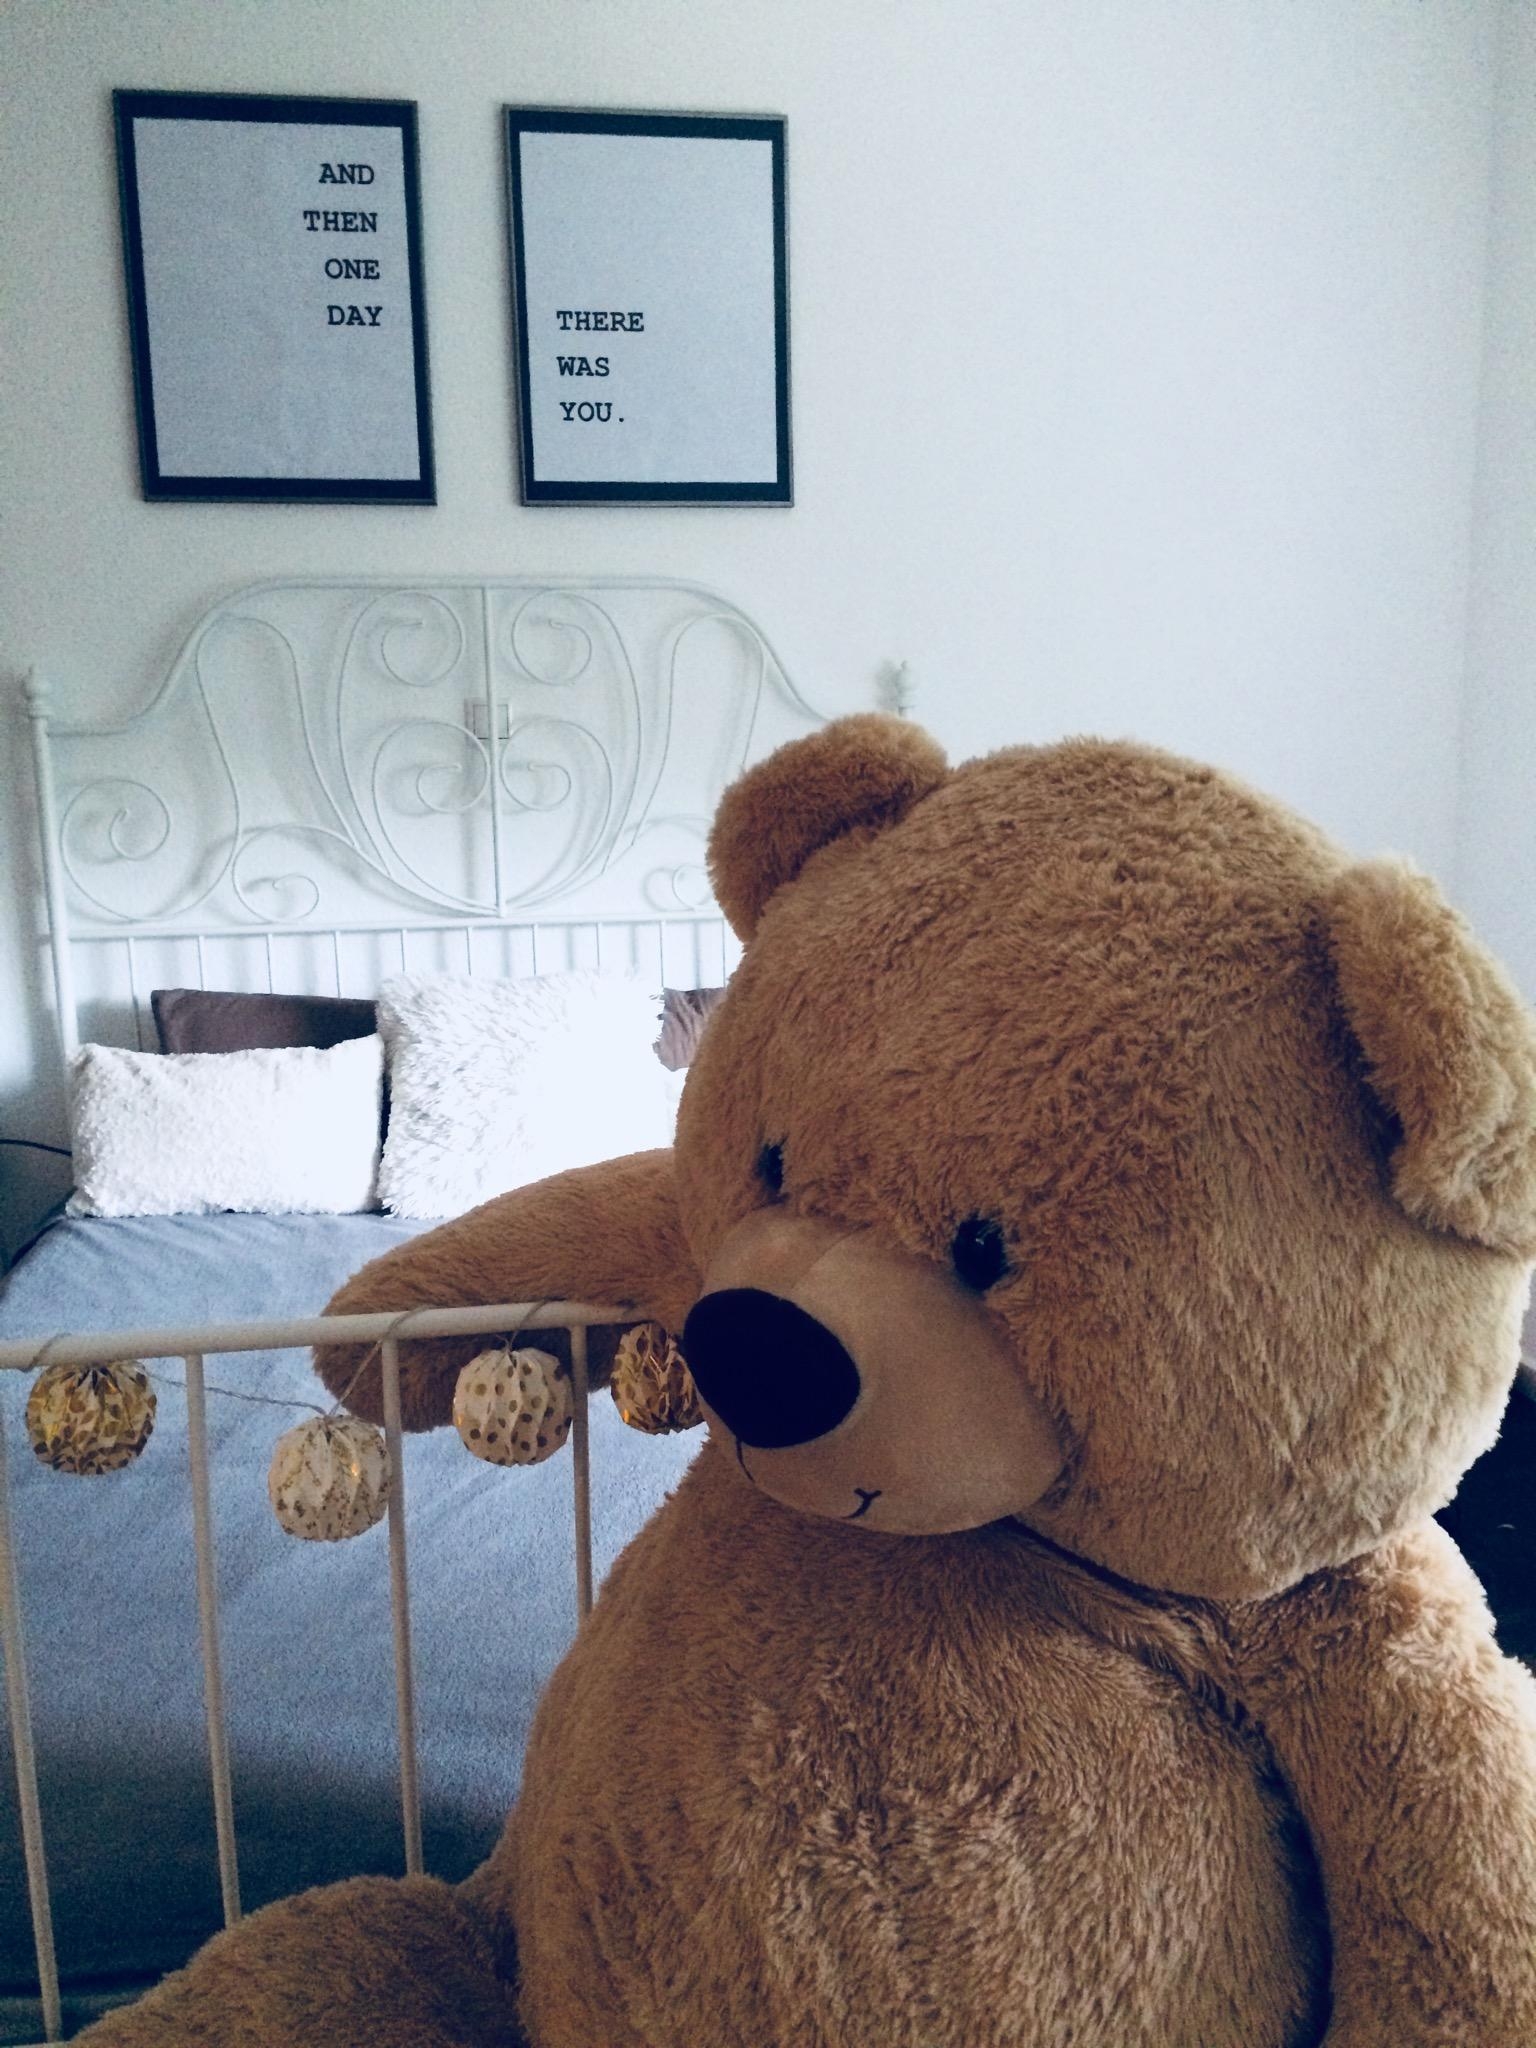 So gemütlich! #schlafzimmer #cosy #weiß #grau #teddy #quote #kissen #flauschig